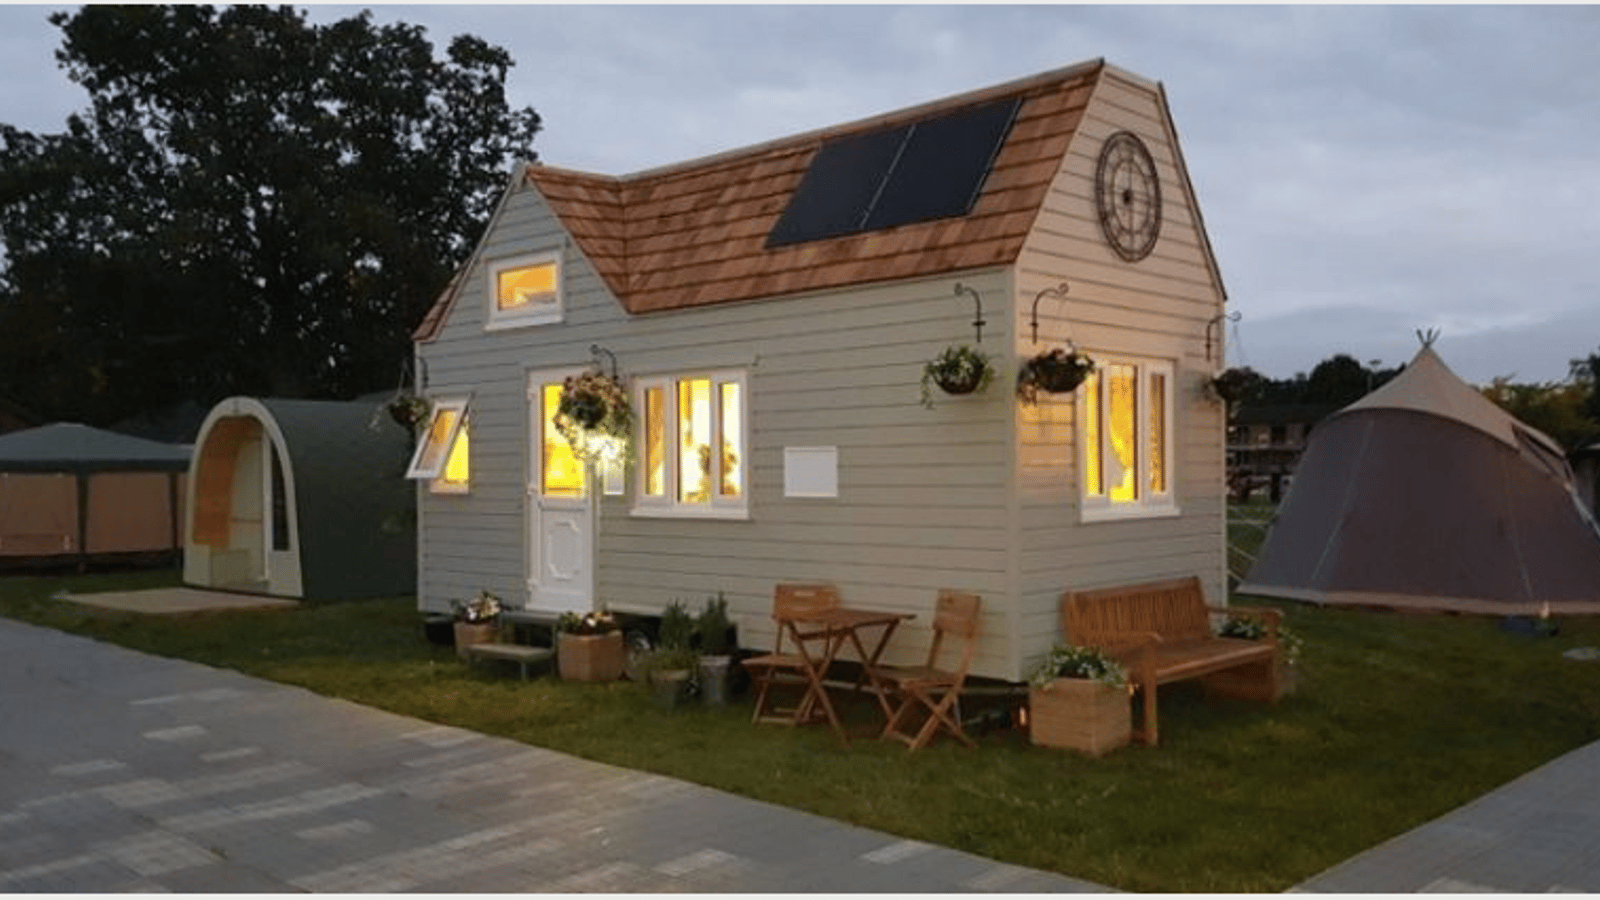 Ces mini-maisons sont non seulement magnifiques, mais écologiques